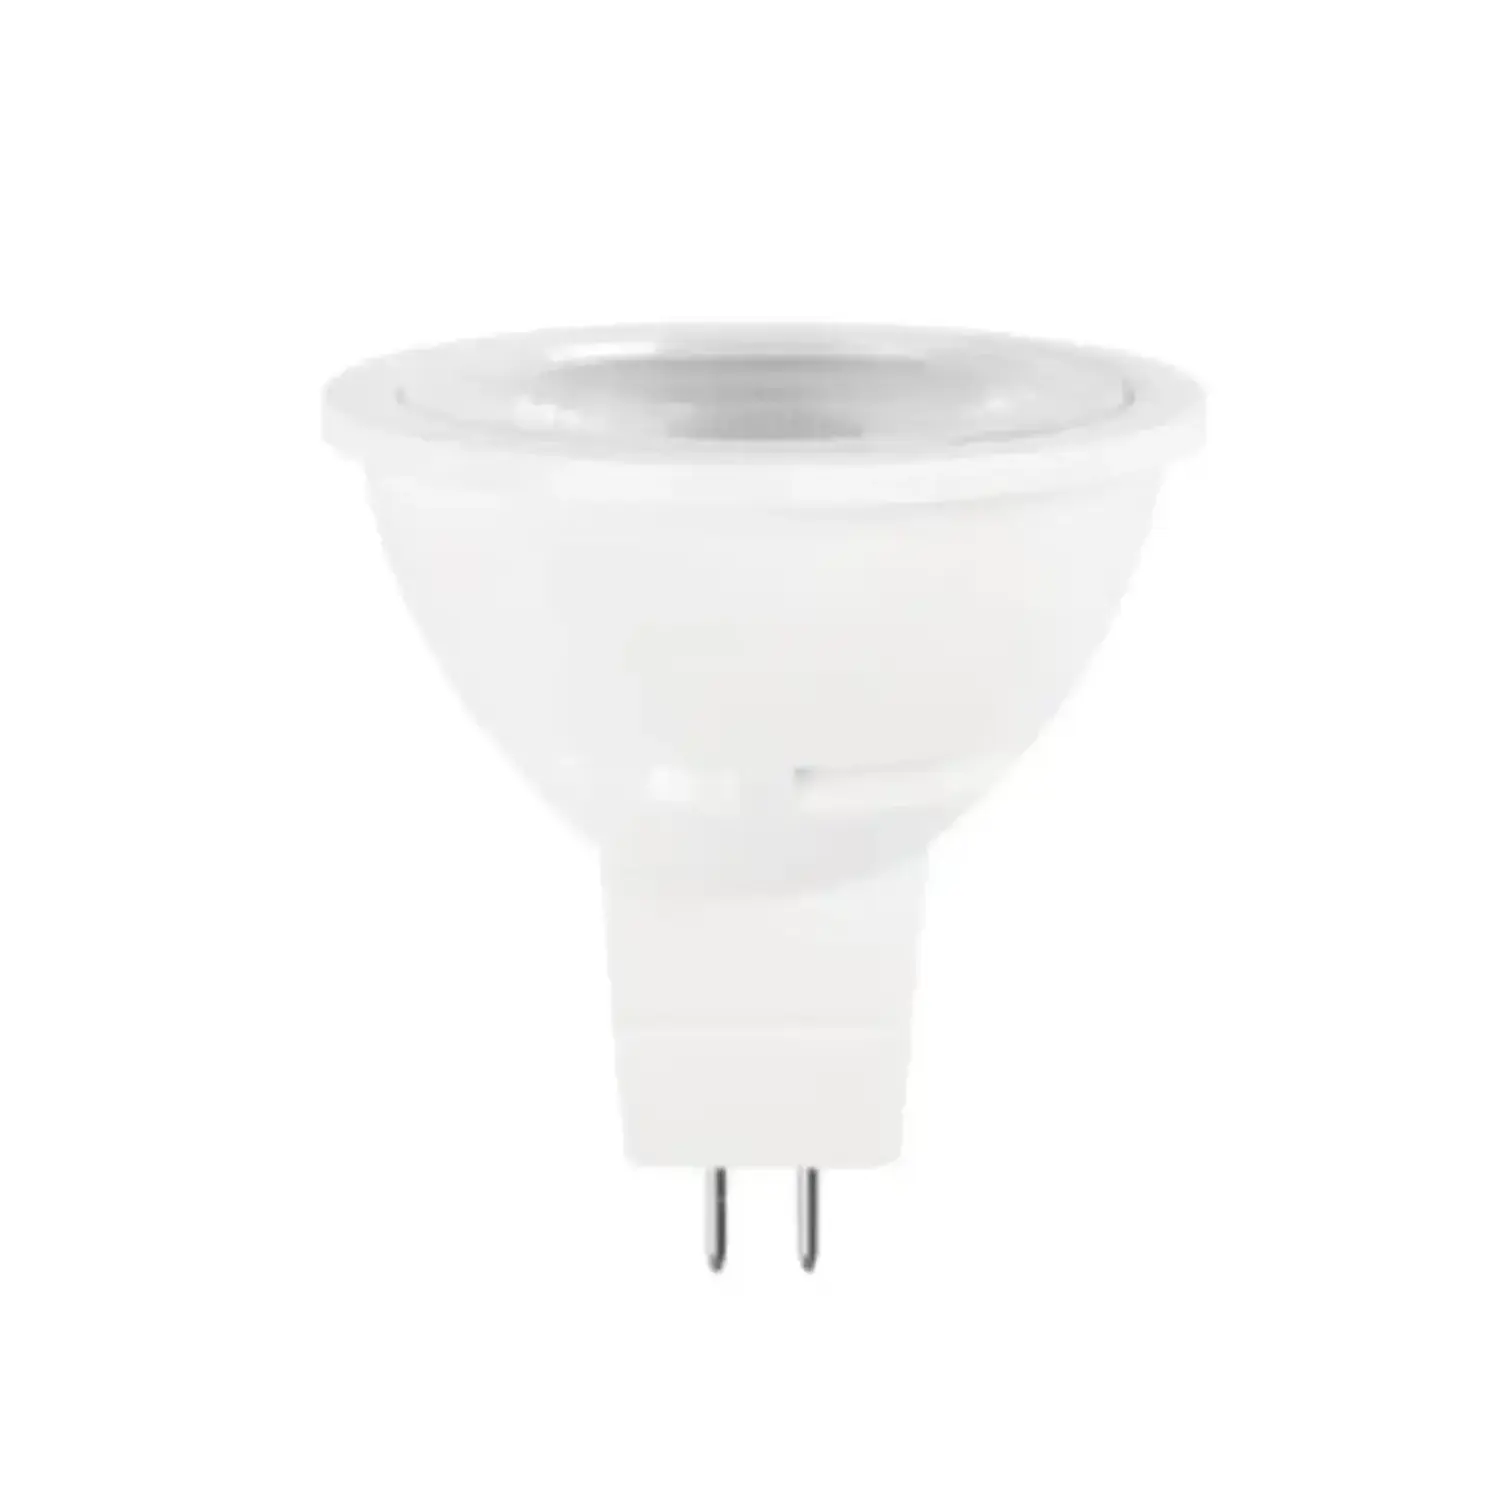 immagine del prodotto lampadina led mr16 12 volt ac-dc faretti gx5,3 6 watt bianco caldo